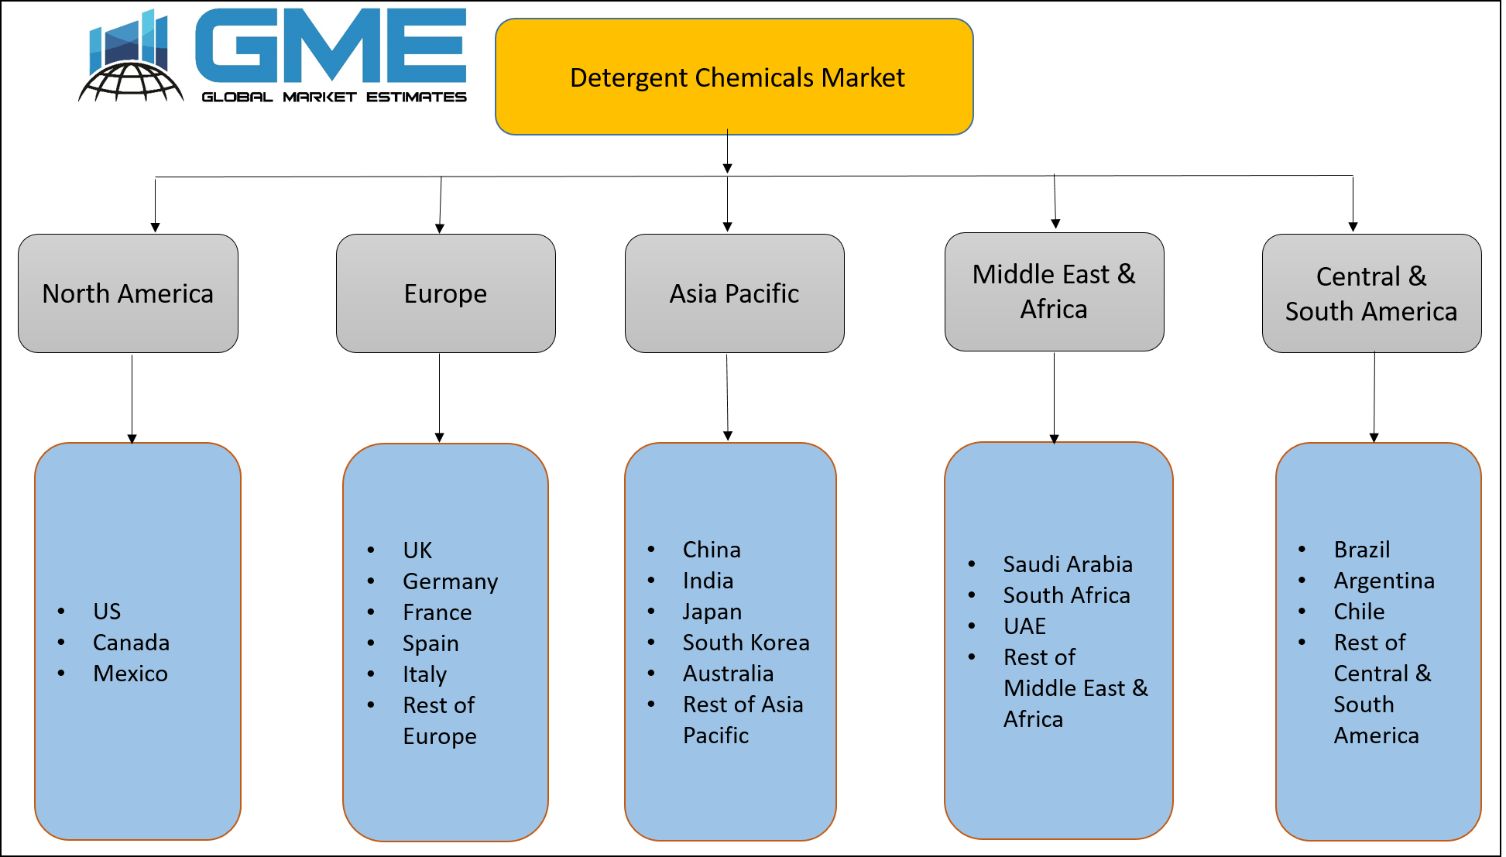 Detergent Chemicals Market - Regional Analysis